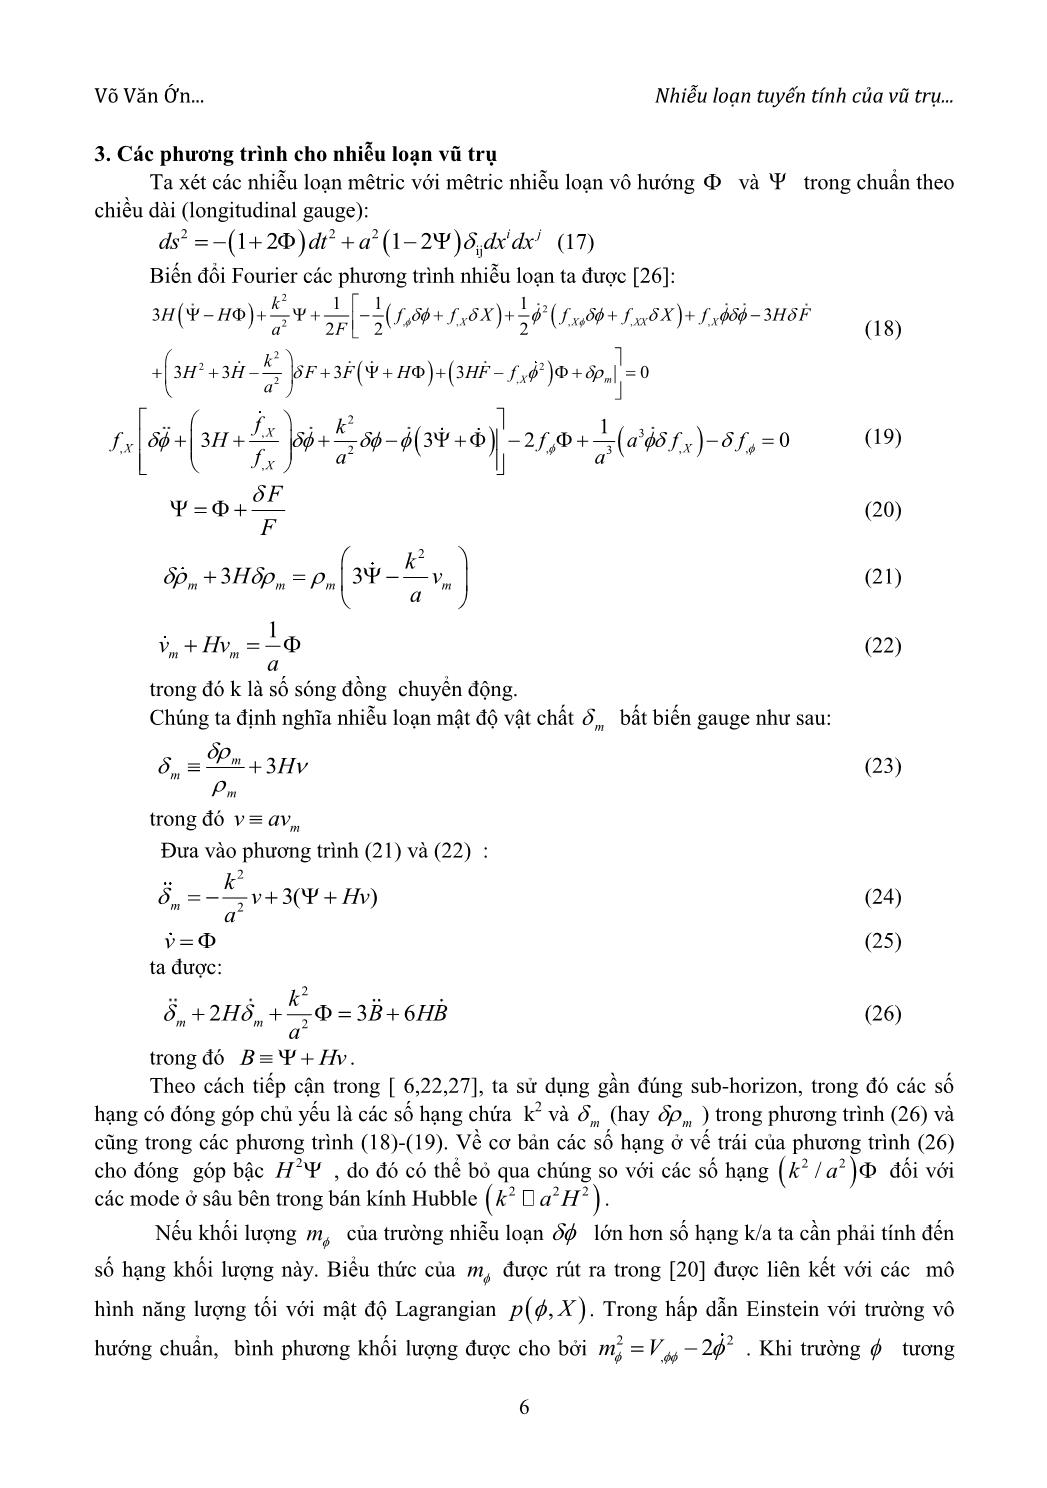 Nhiễu loạn tuyến tính của vũ trụ trong lớp mô hình hấp dẫn cải tiến f(R) dạng hàm mũ - đa thức trang 4